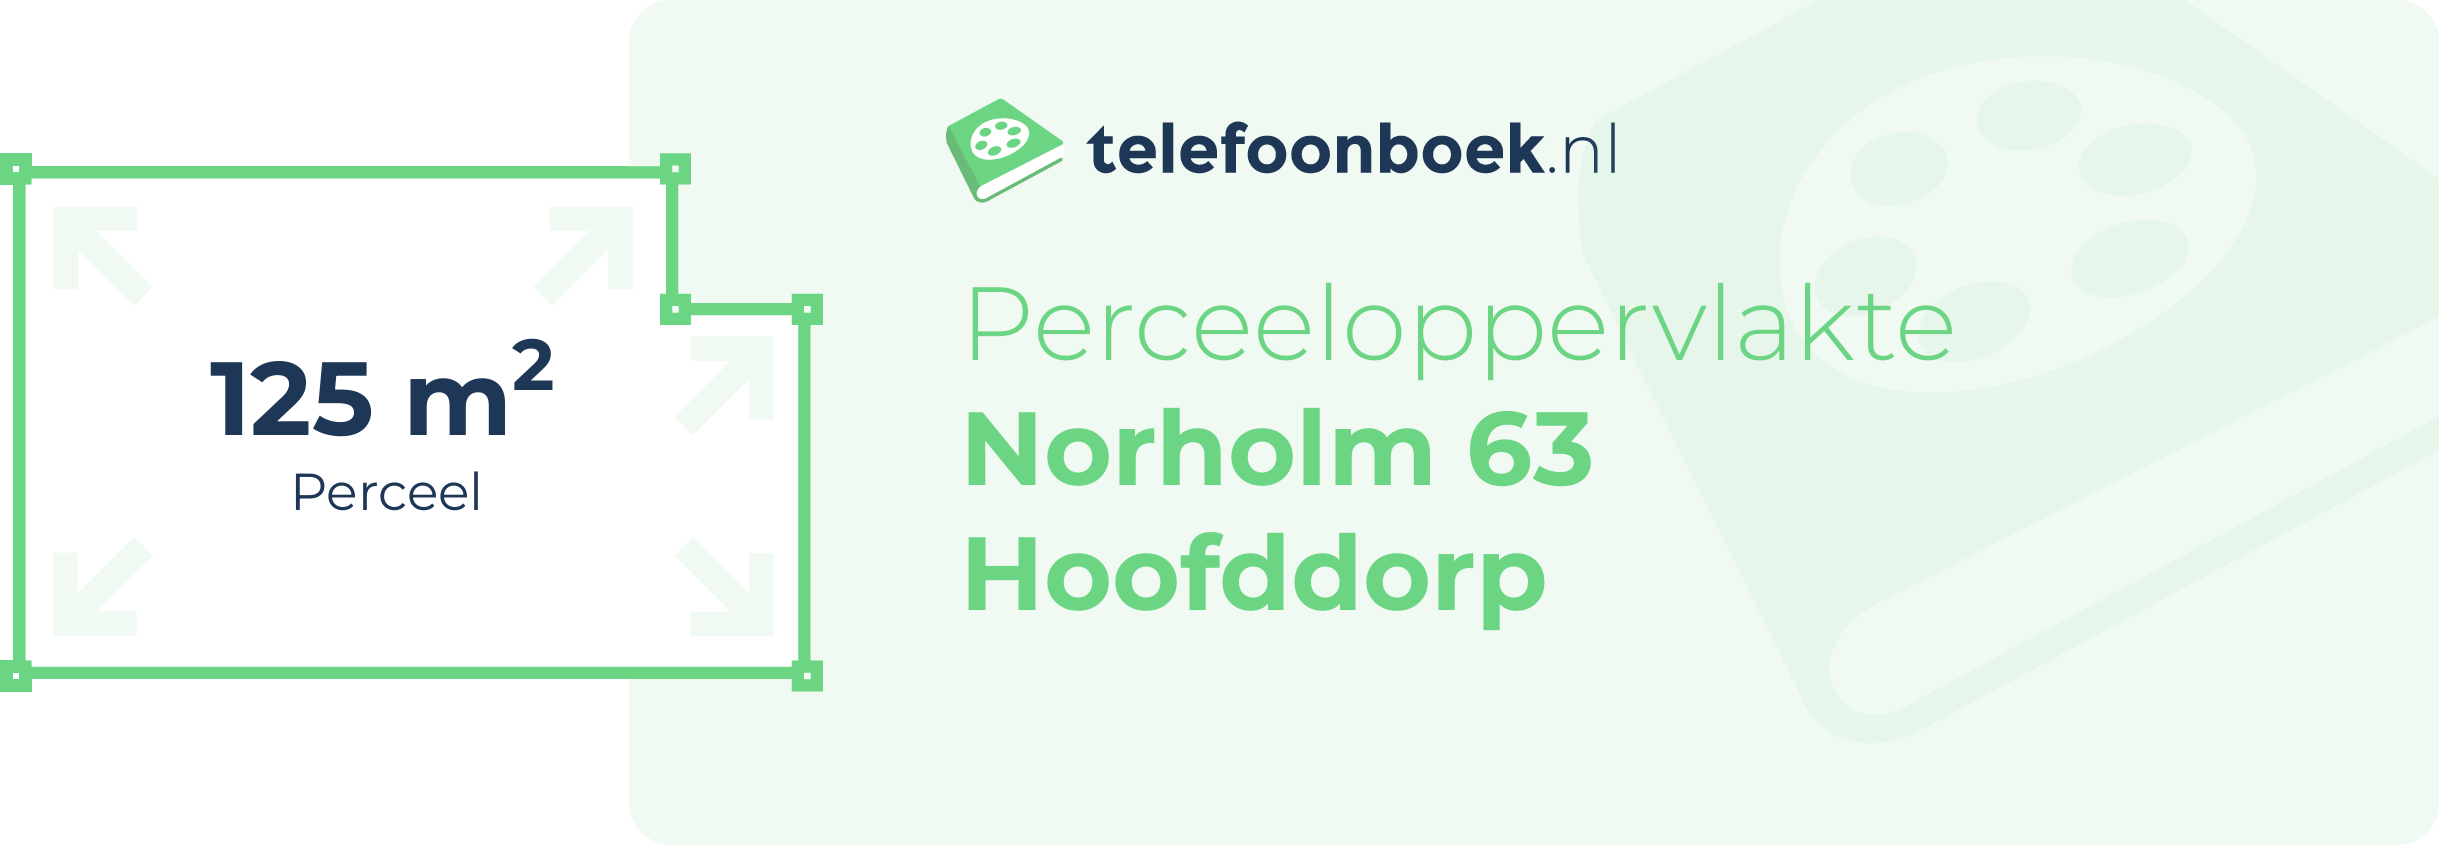 Perceeloppervlakte Norholm 63 Hoofddorp